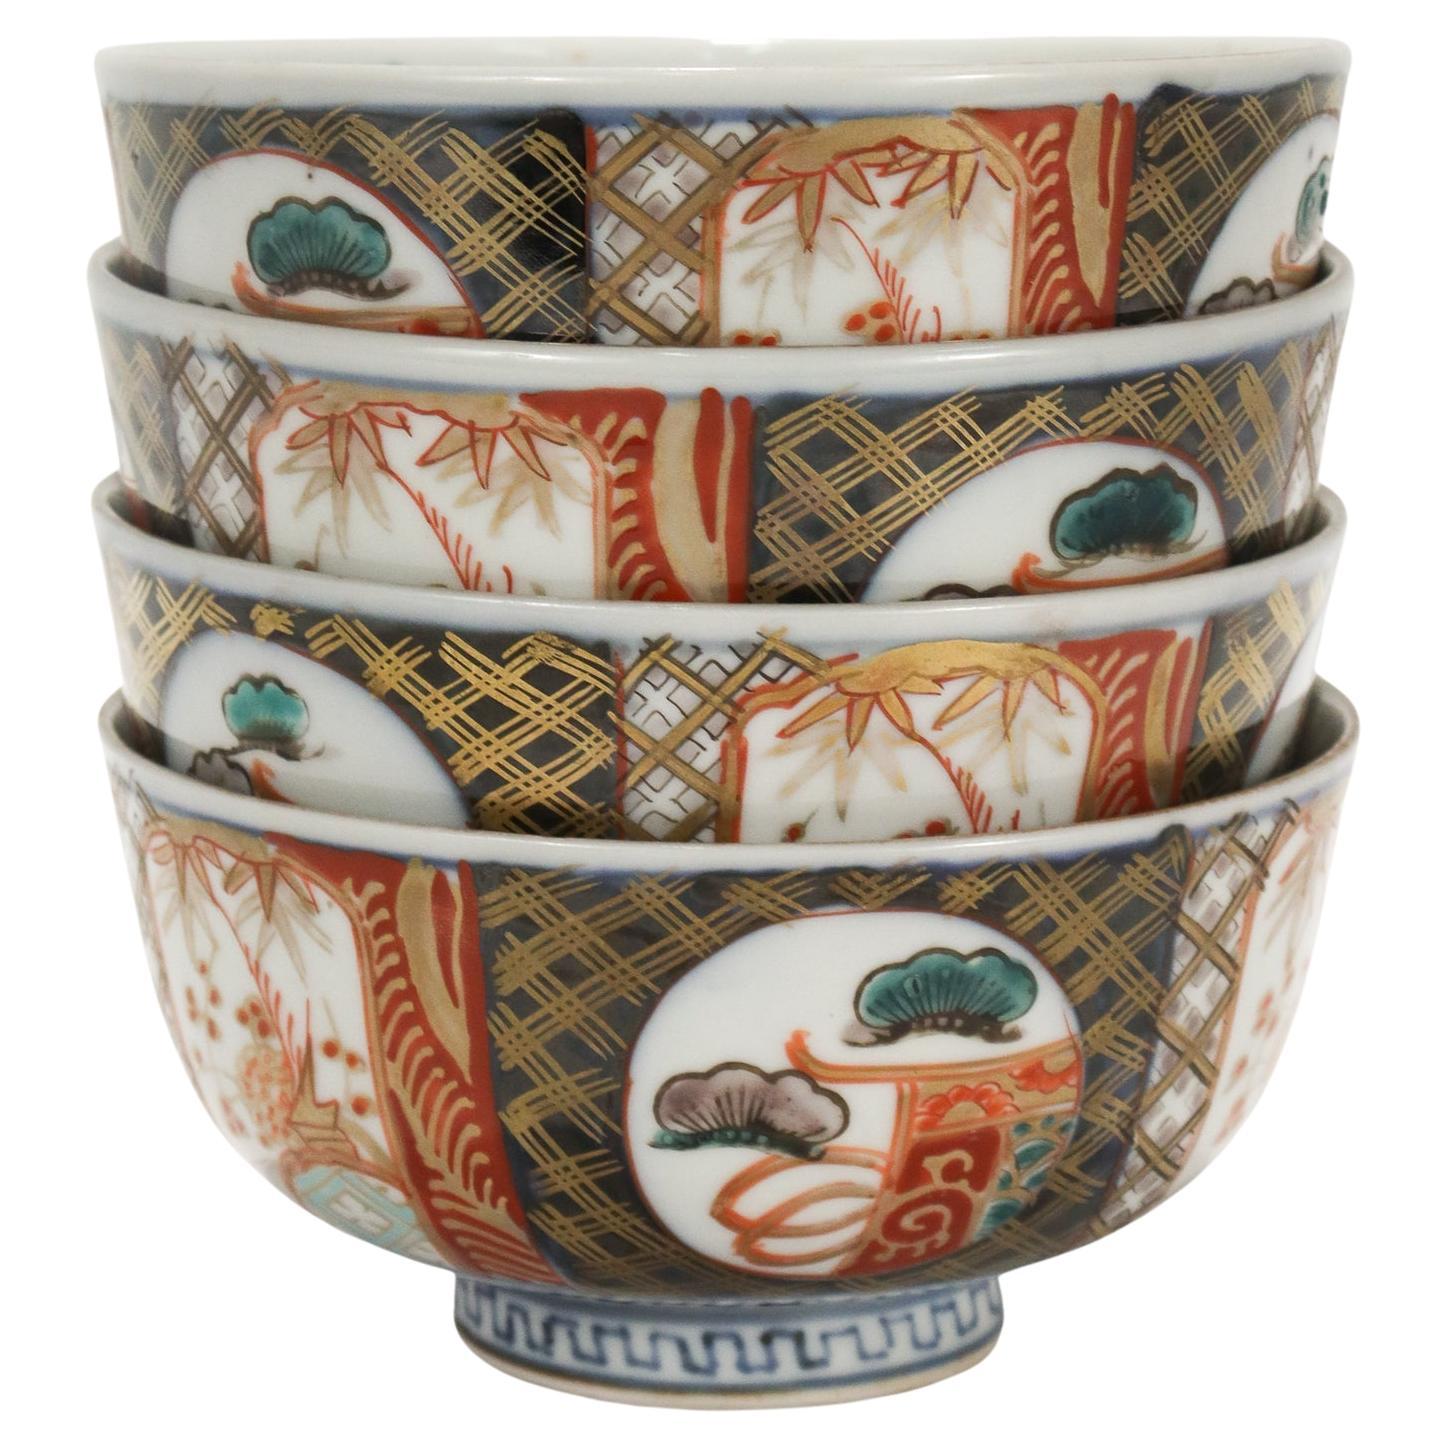 Japanese 5.12 rice bowl set of 2 bowls Ume blossom ceramic 